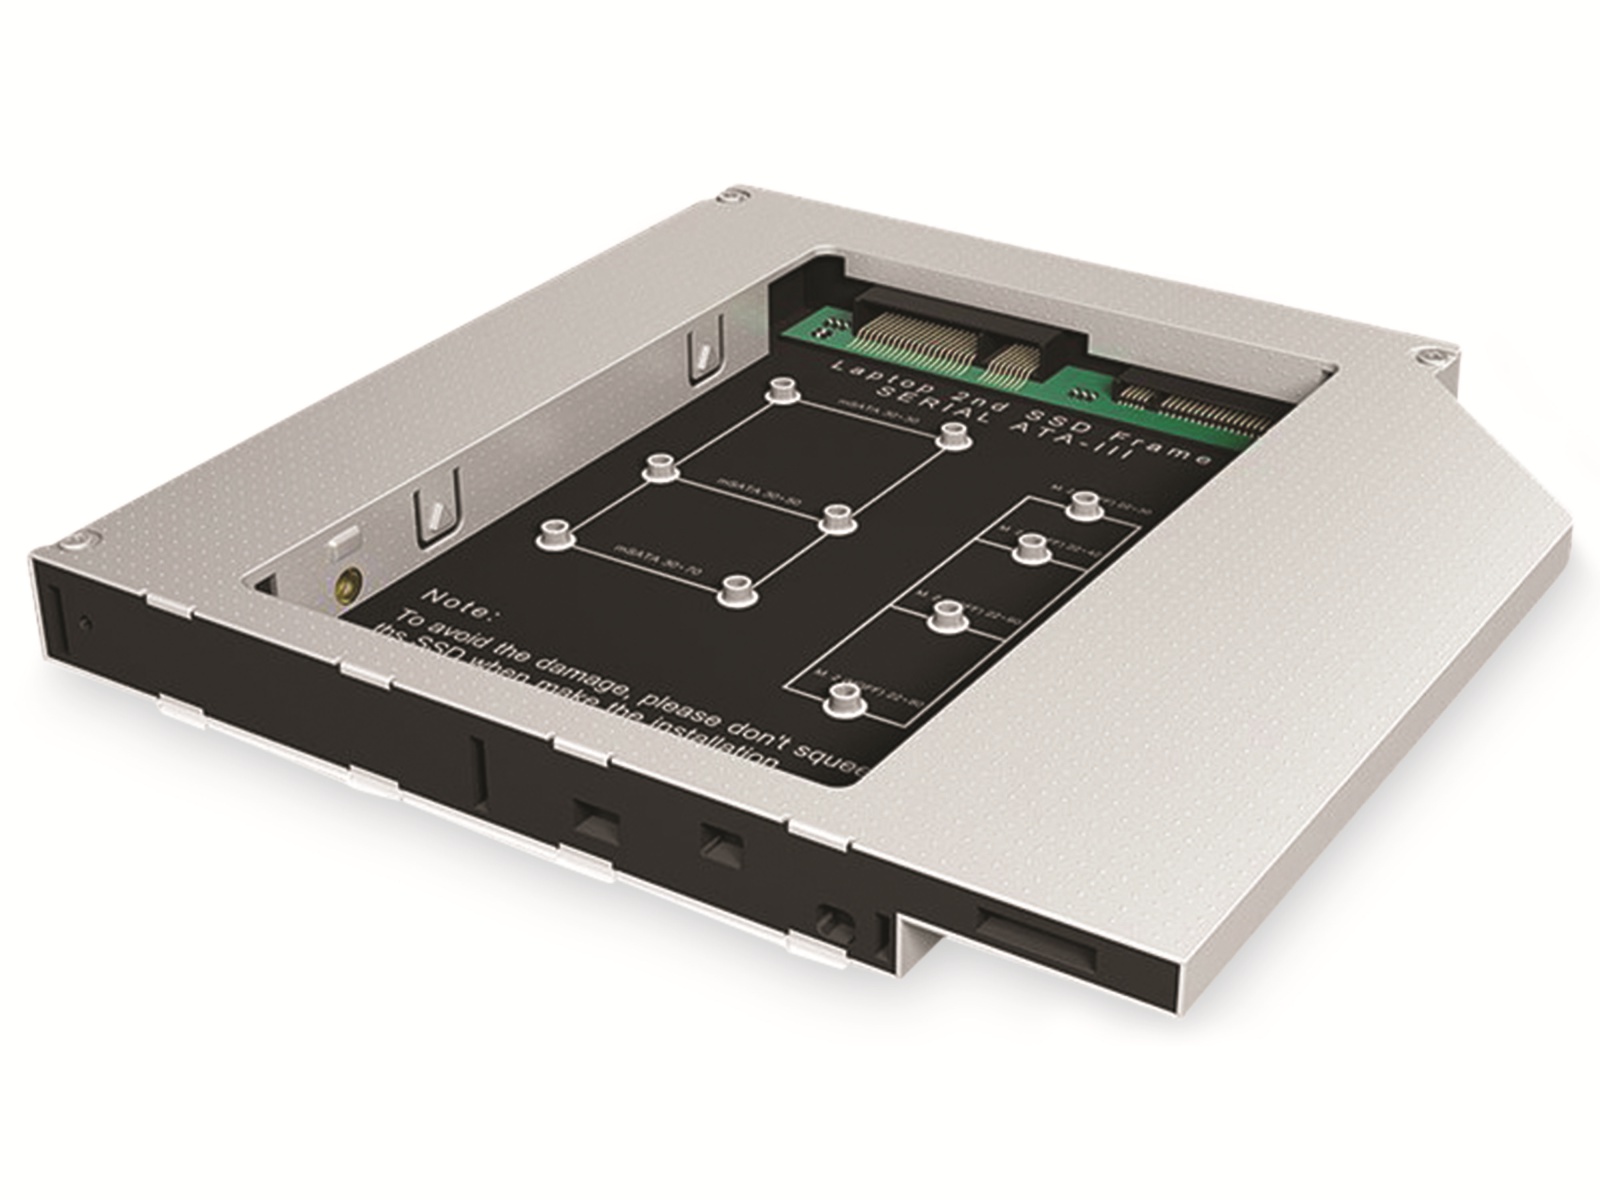 ICY BOX Festplattengehäuse IB-AC650, für eine mSATA oder M.2 SATA SSD